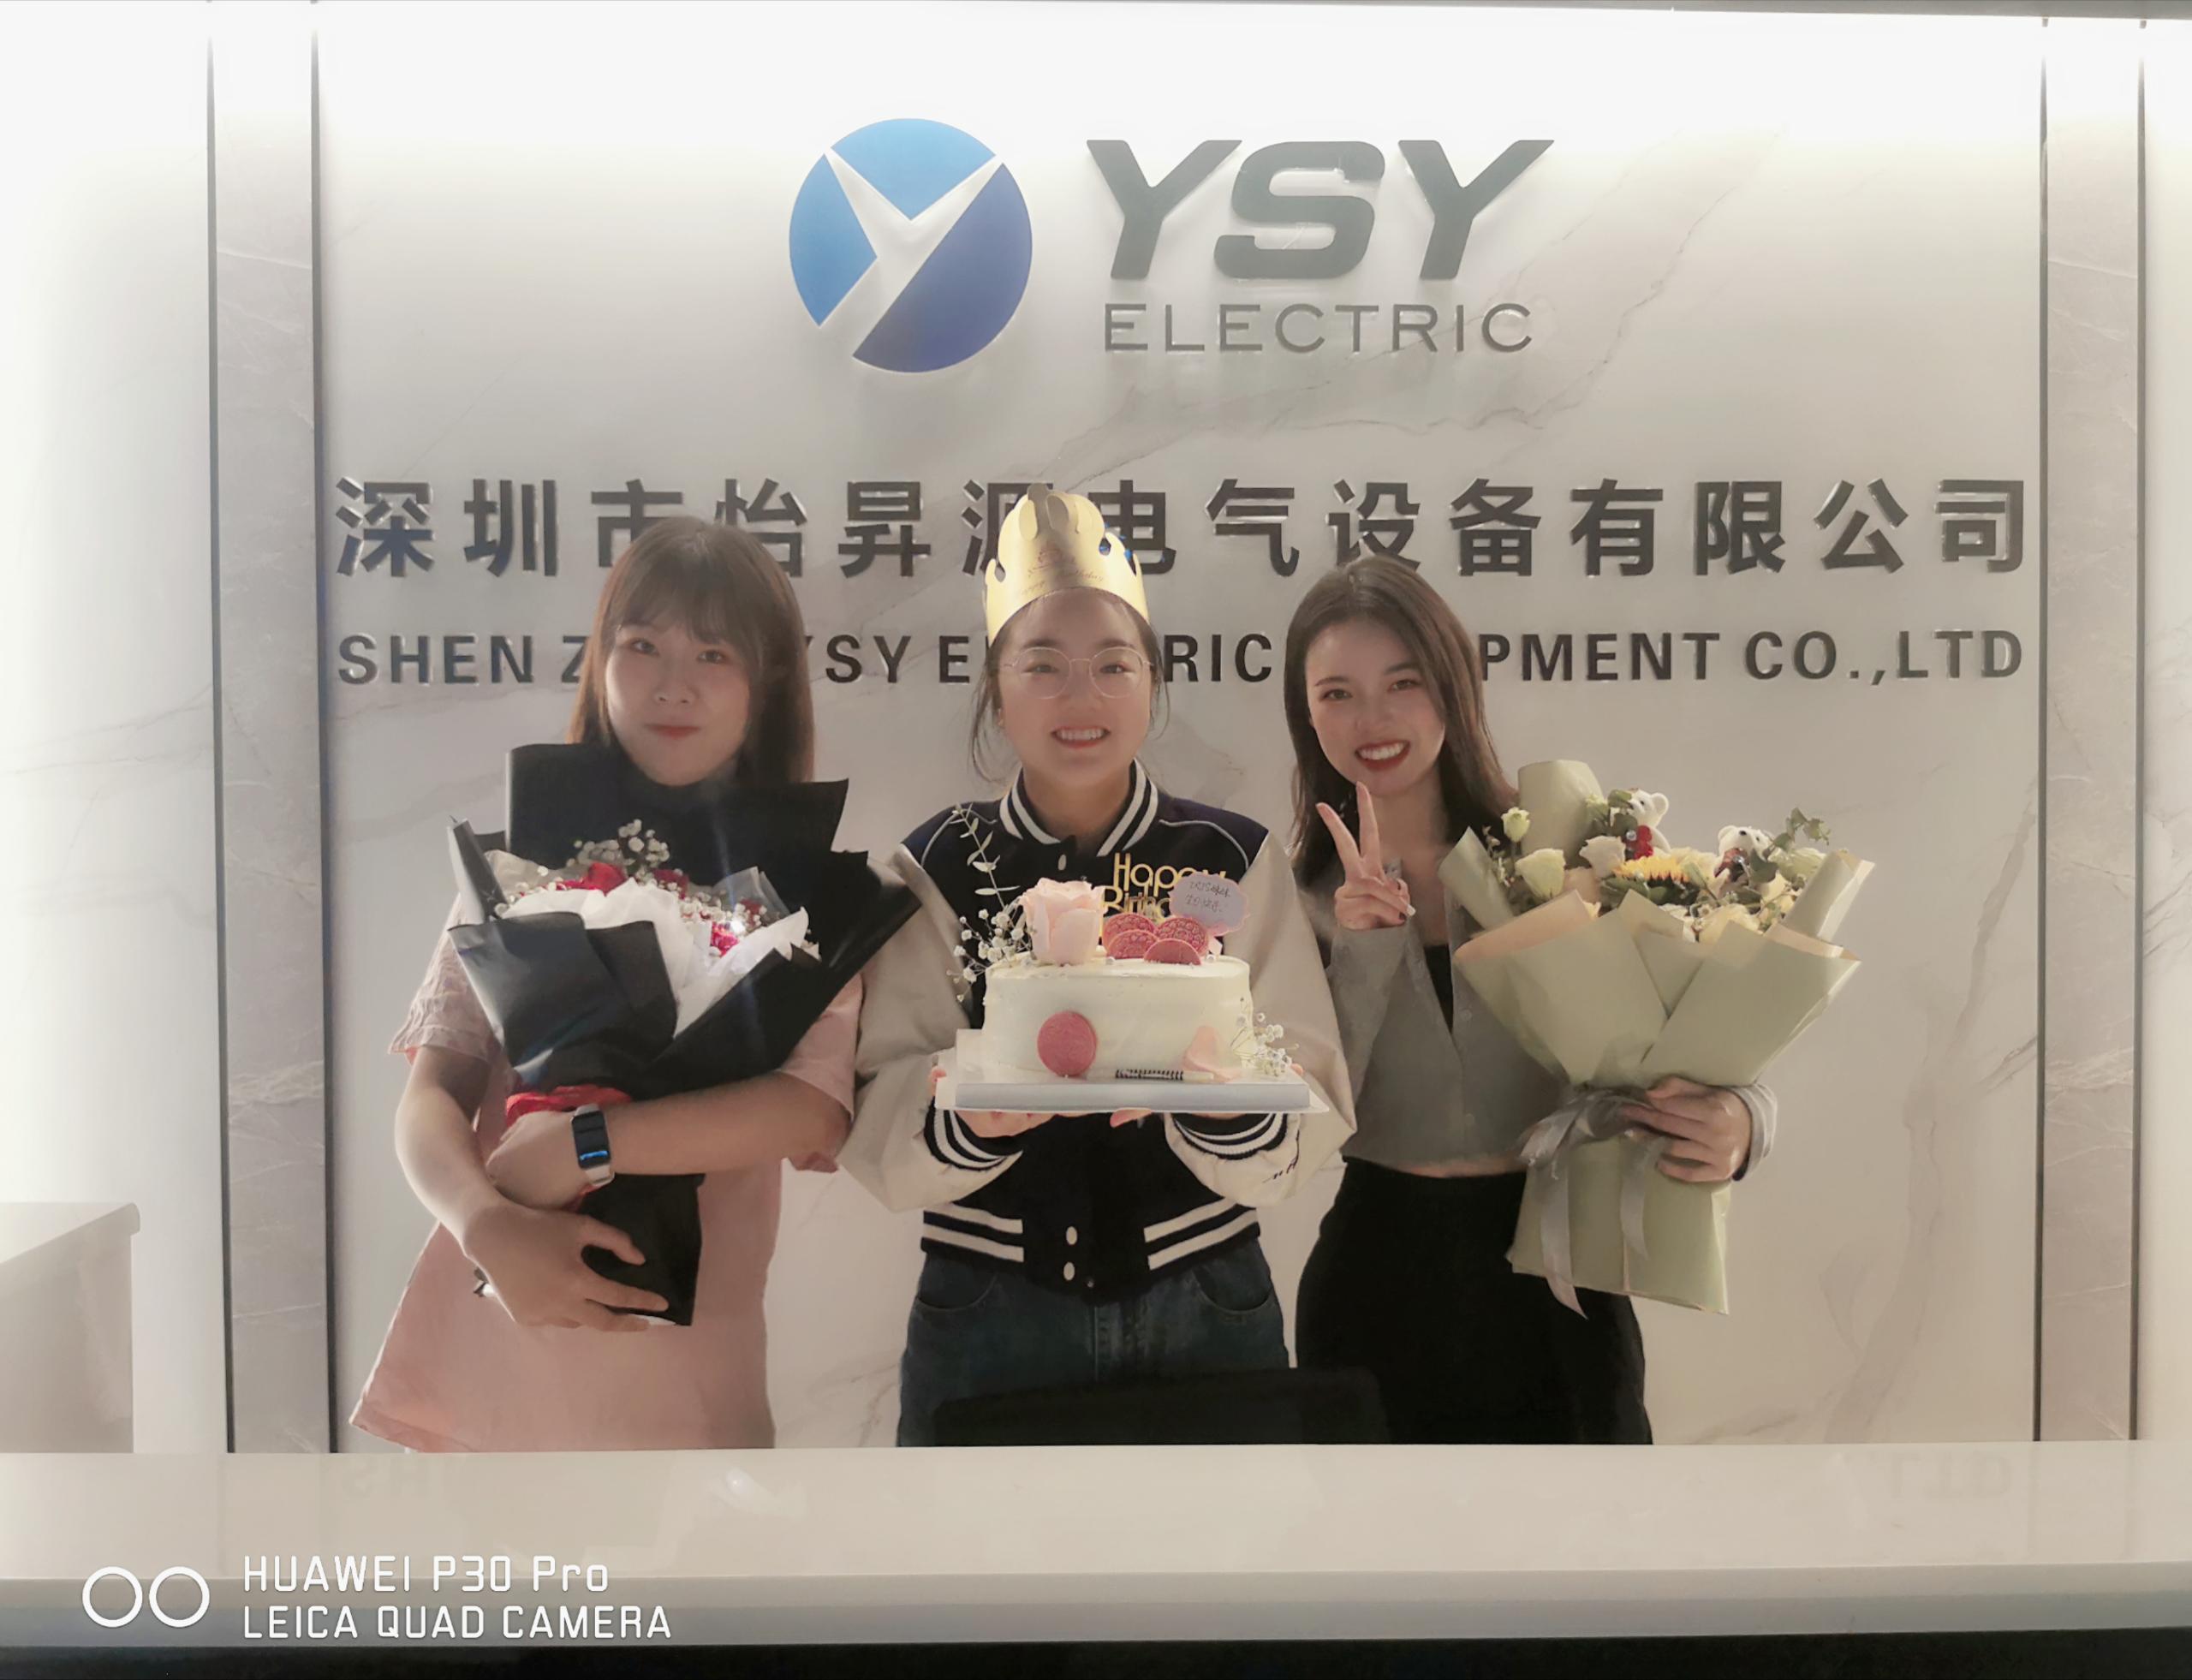 YSY इलेक्ट्रिकच्या 2 विक्रीला वाढदिवसाच्या शुभेच्छा!